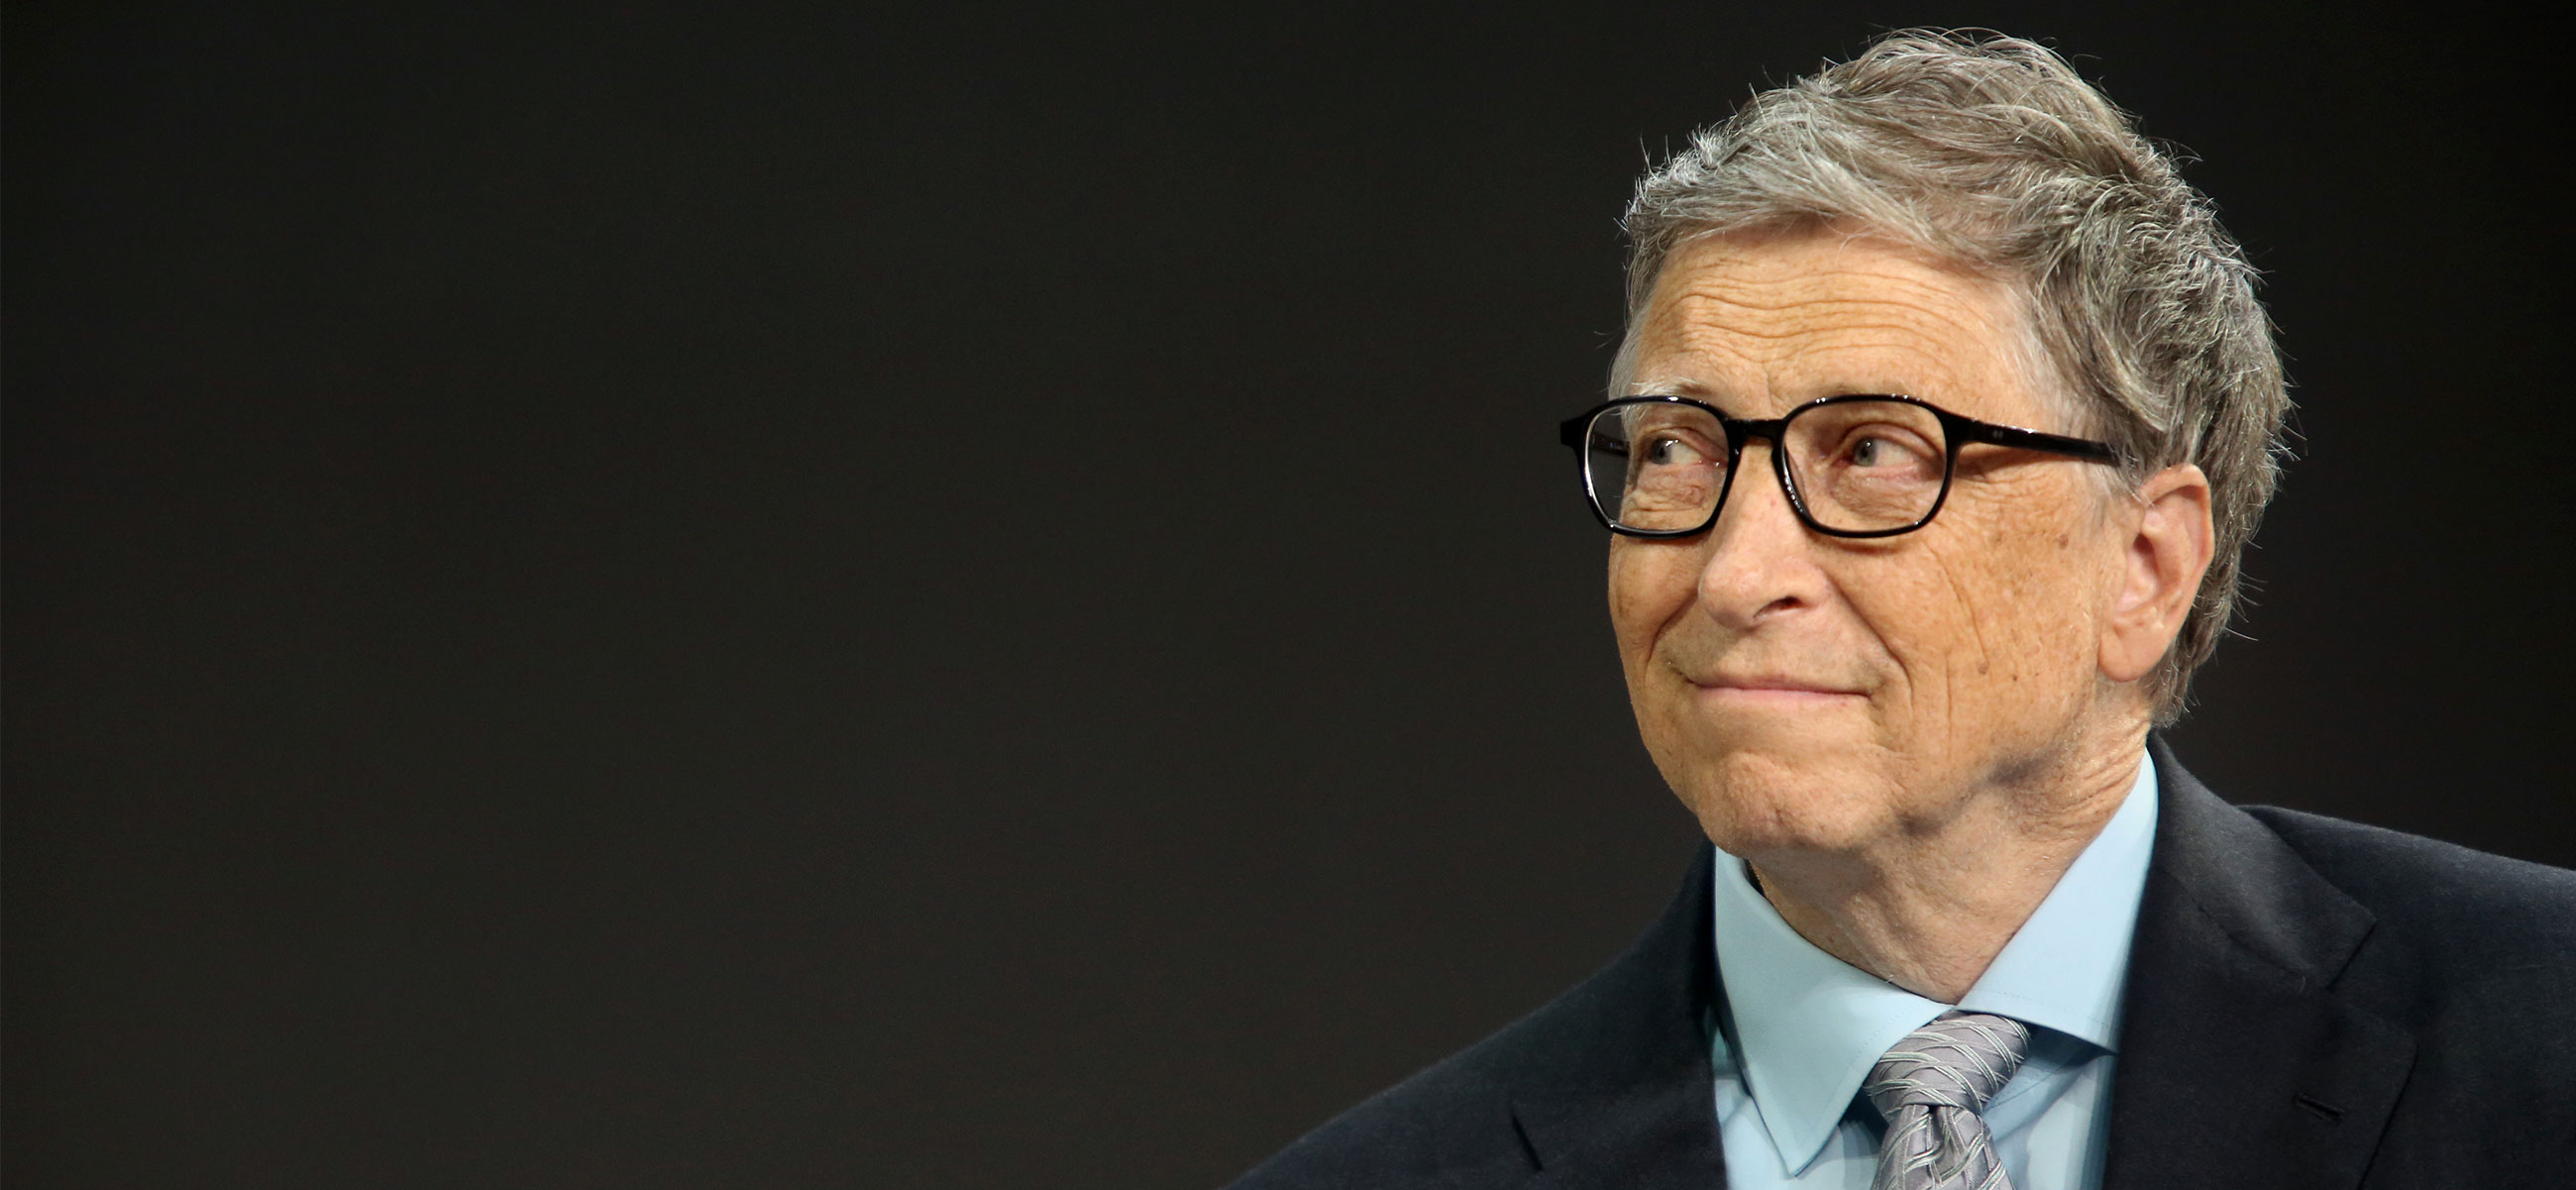 Билл Гейтс: Попросив людей потреблять меньше, вы не решите проблему изменения климата